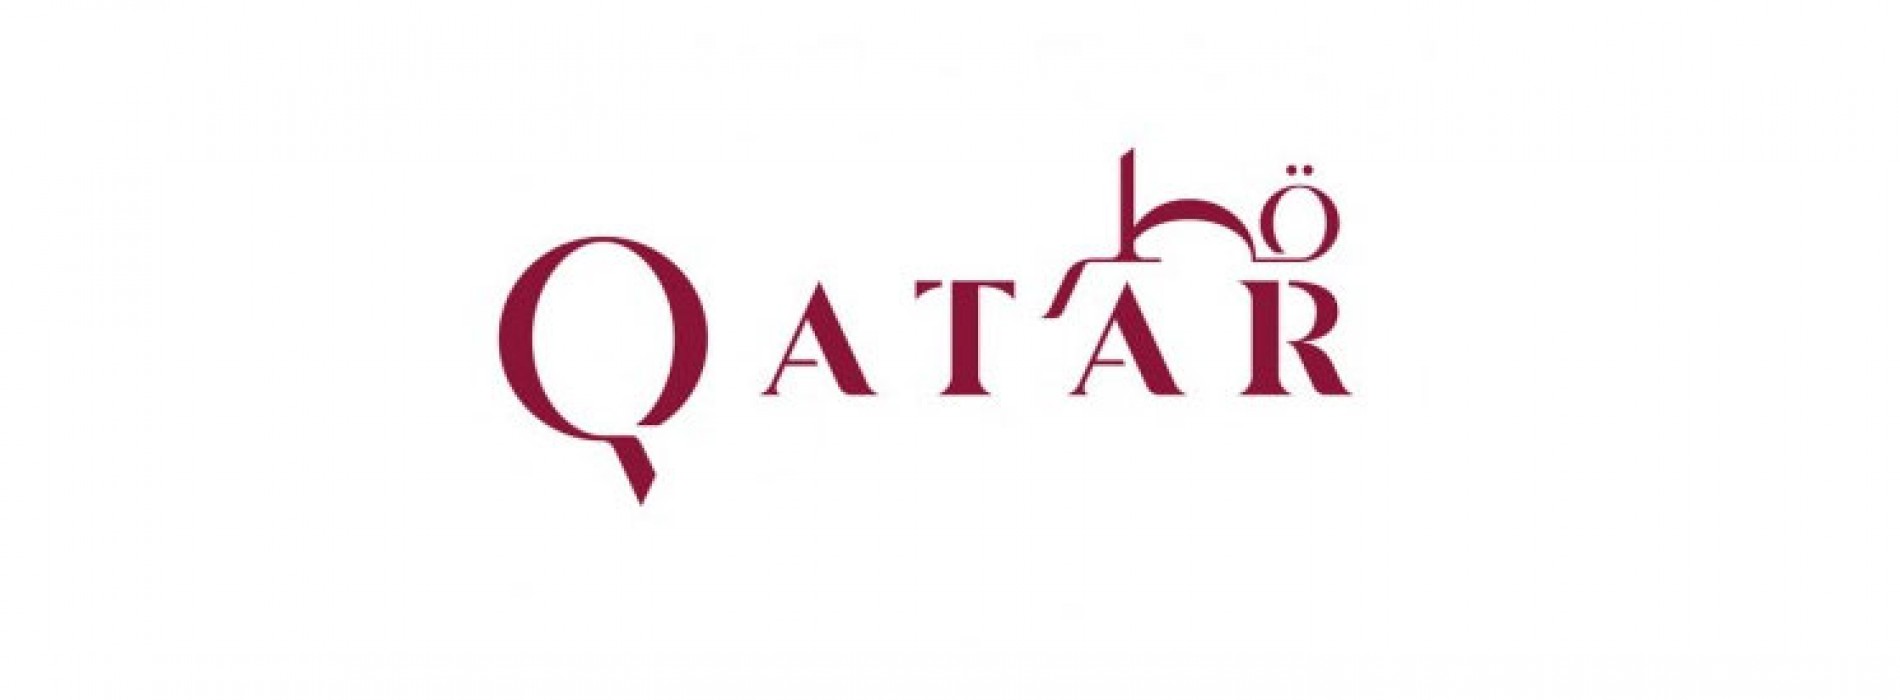 Qatar Destination Brand launches at World Travel Market